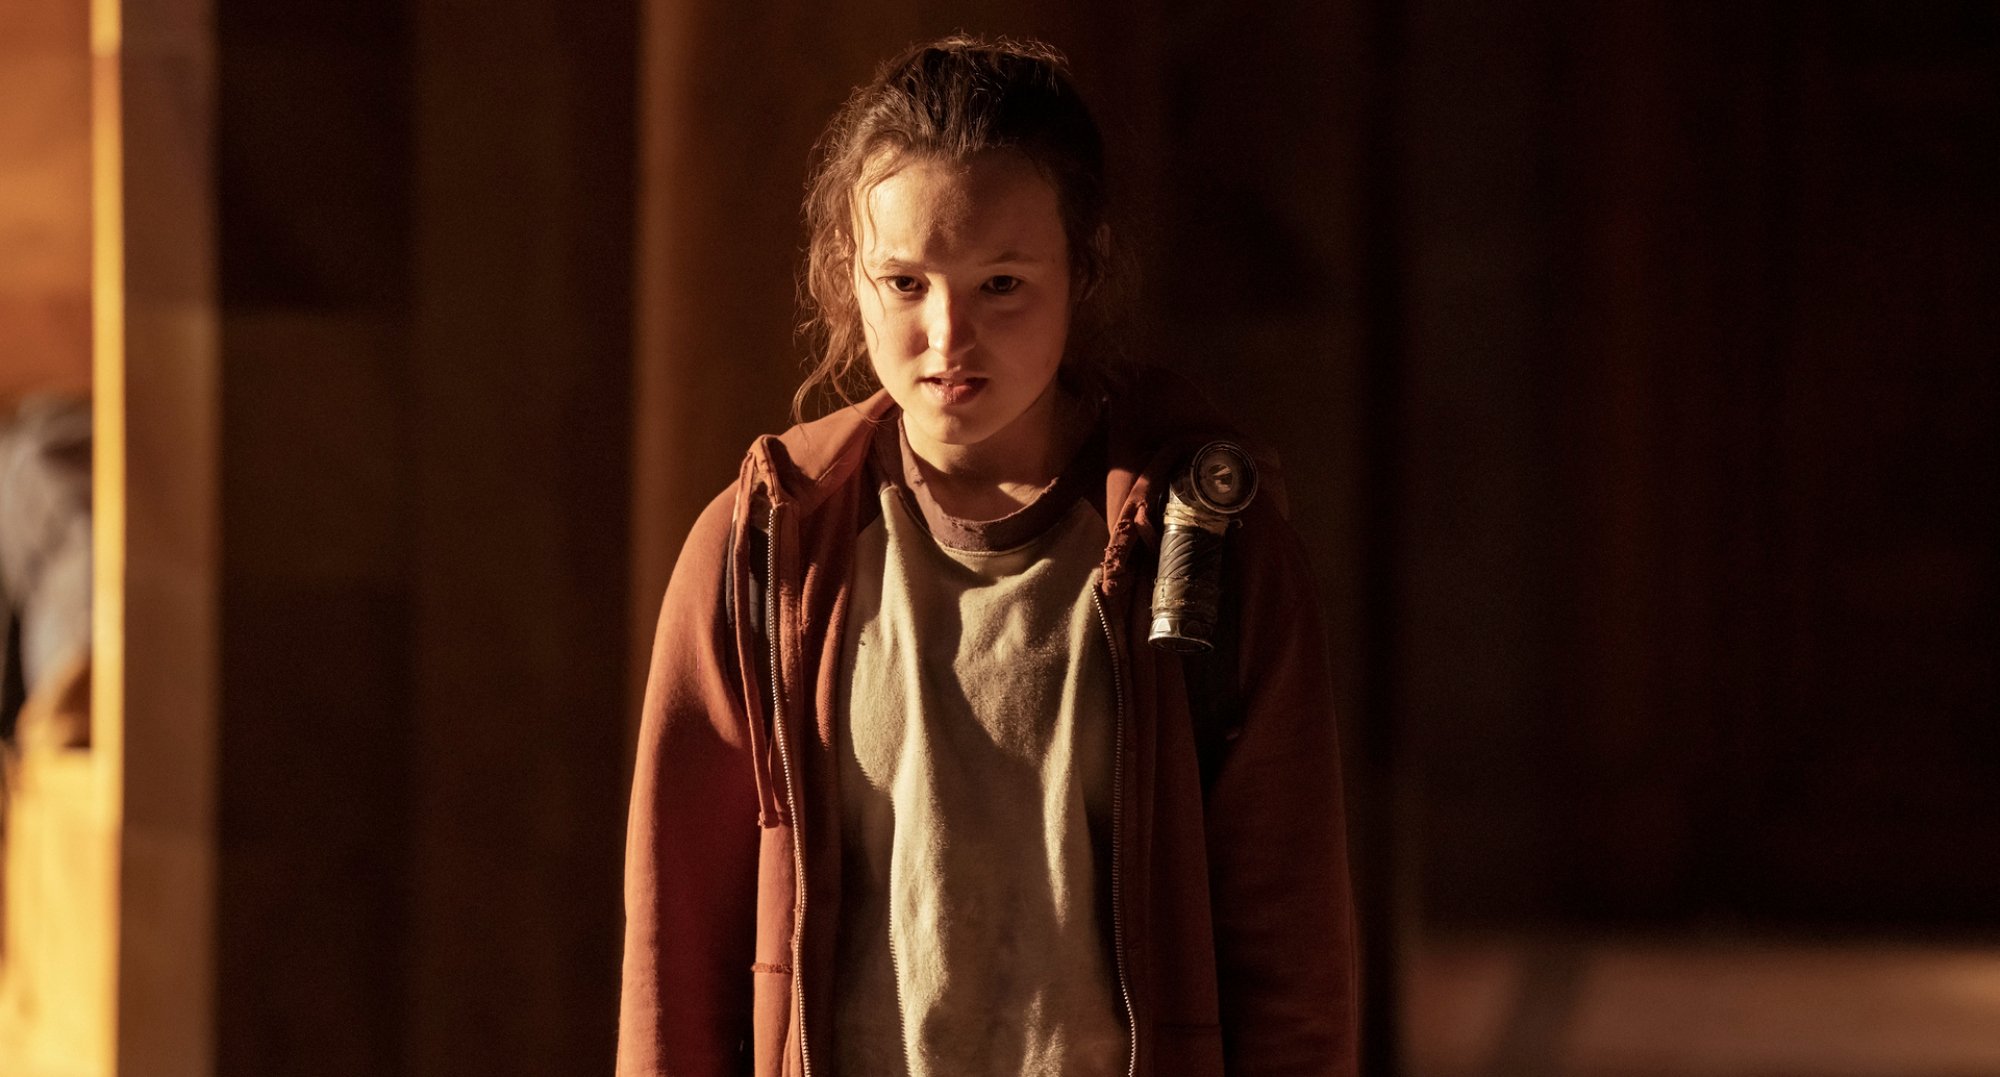 Bella Ramsey as Ellie in 'The Last of Us' Episode 2.